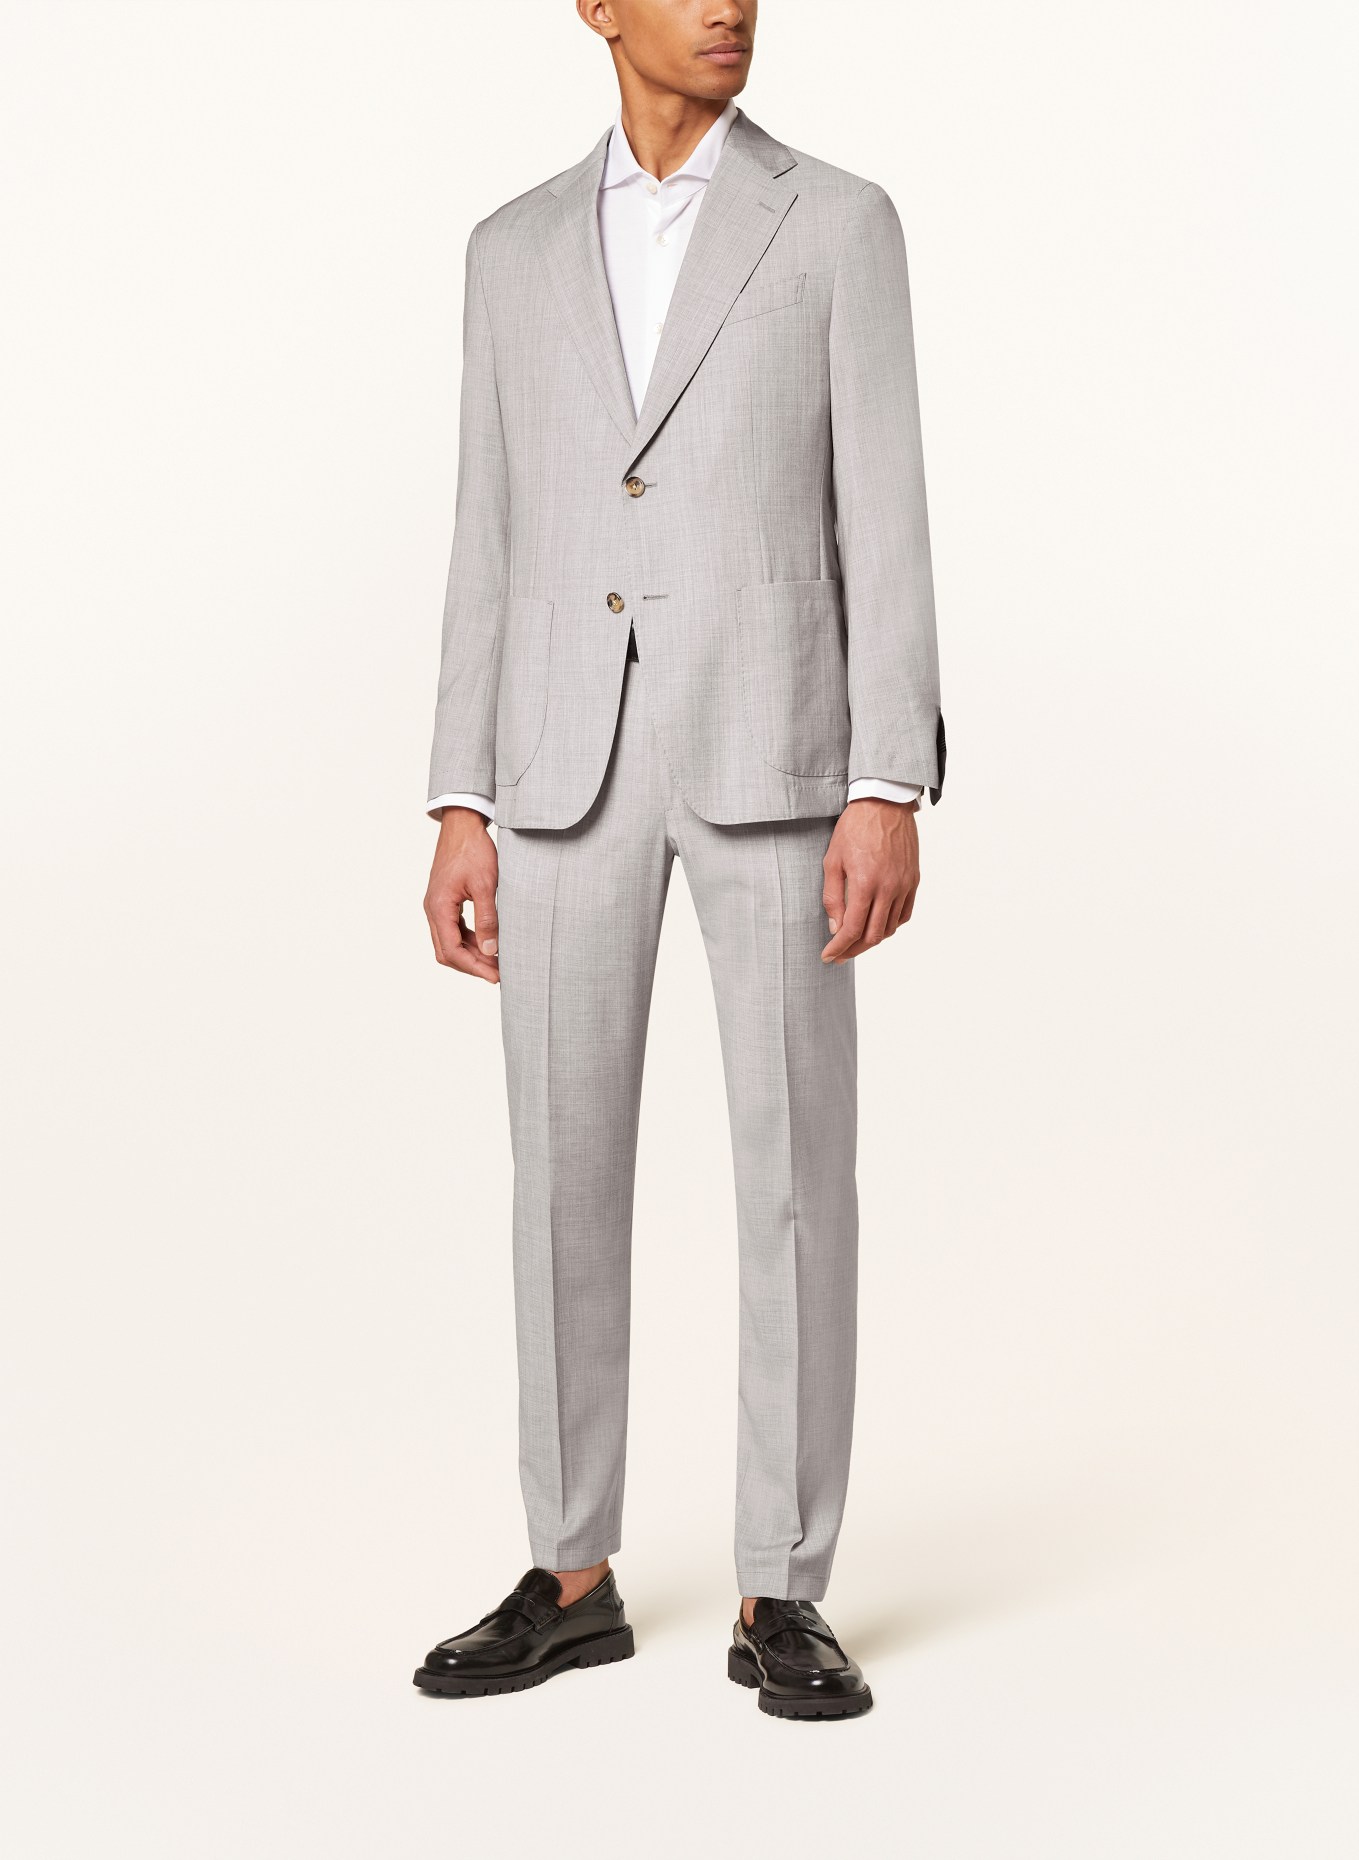 windsor. Suit jacket TRAVEL shaped Fit, Color: 035 Medium Grey                035 (Image 2)